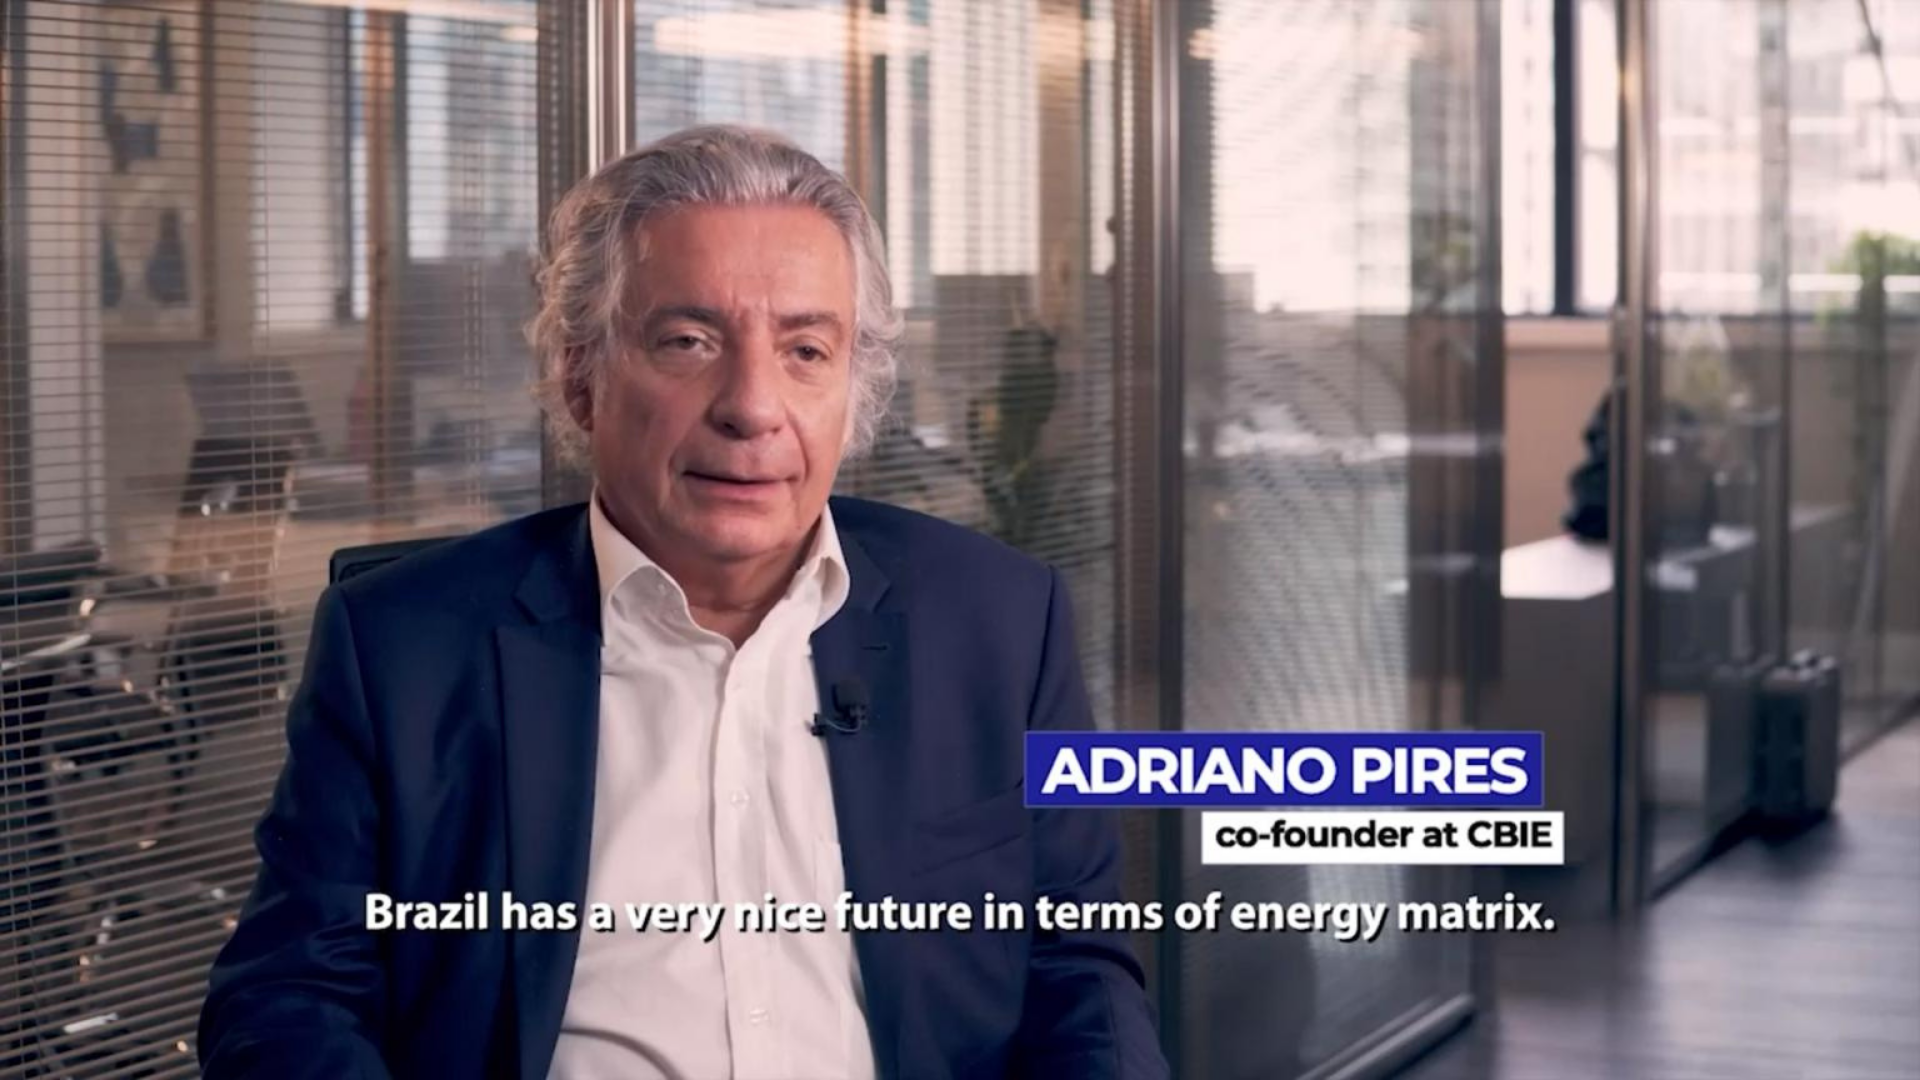 Frequente crítico da Petrobras será novo presidente da Petrobras. Adriano Pires aparece usando terno e cabelo branco.